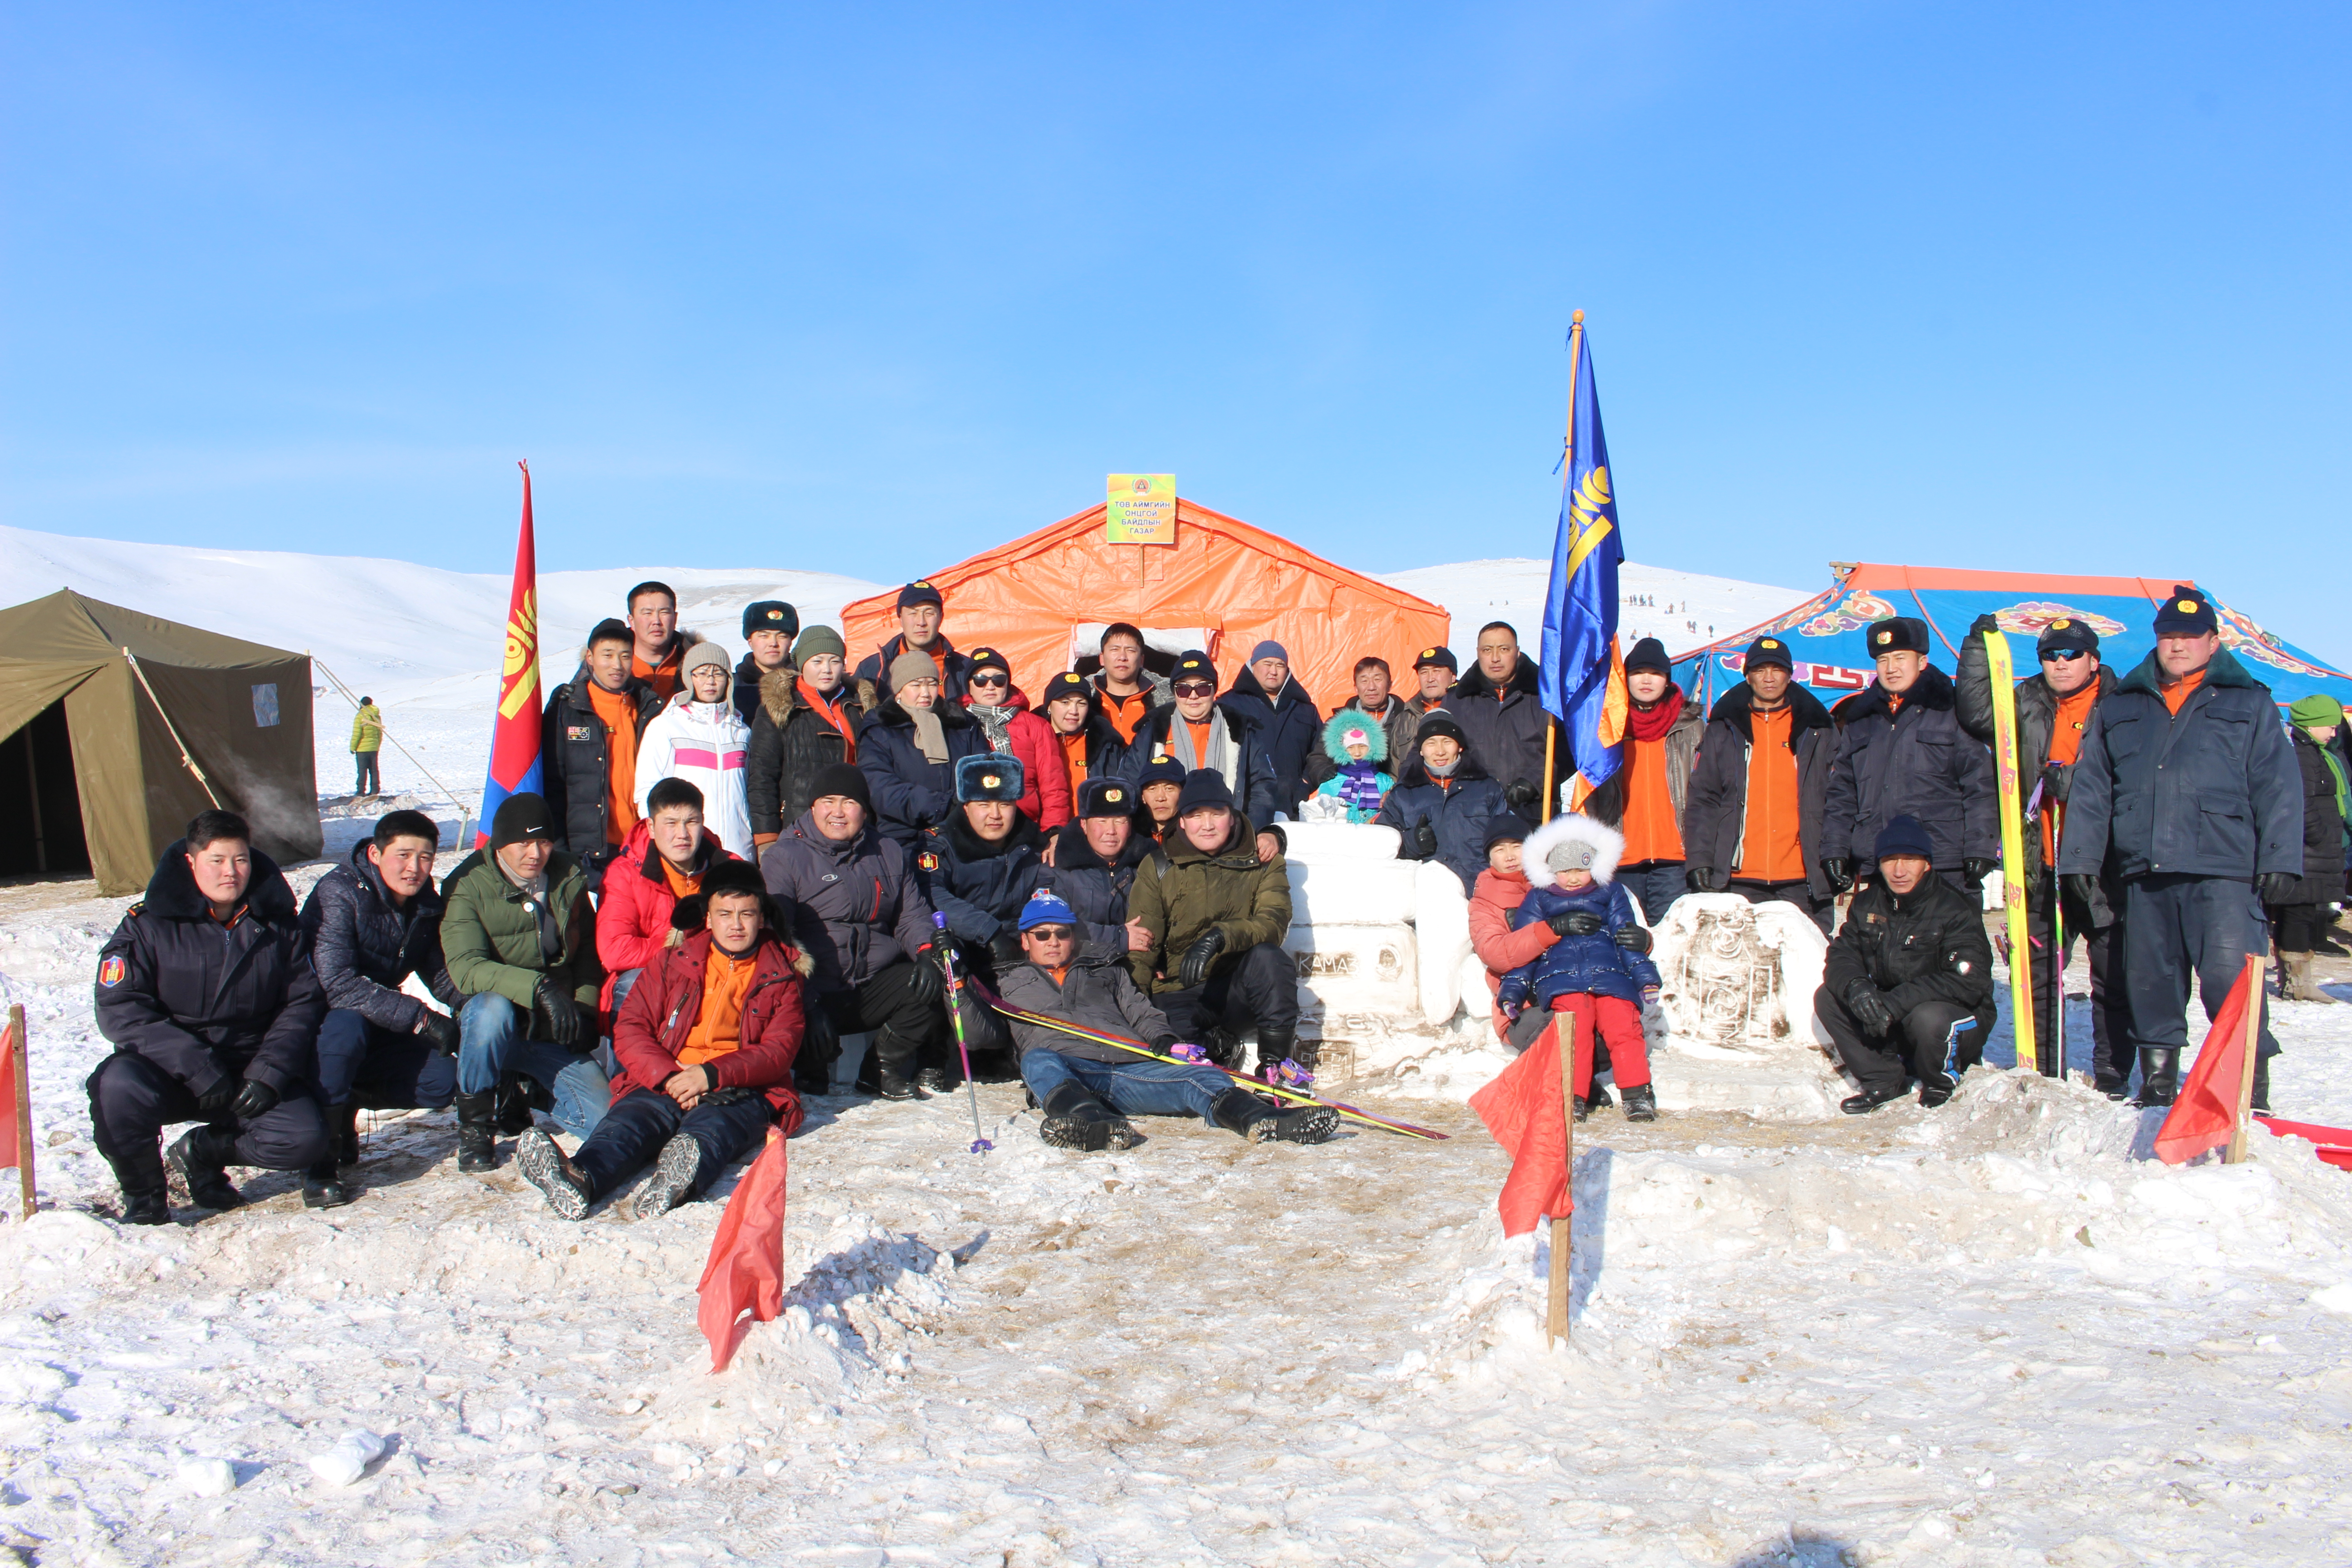  Төв аймгийн ОБГ-ын албан хаагчид "2016 цасны баяр"-т амжилттай оролцлоо 